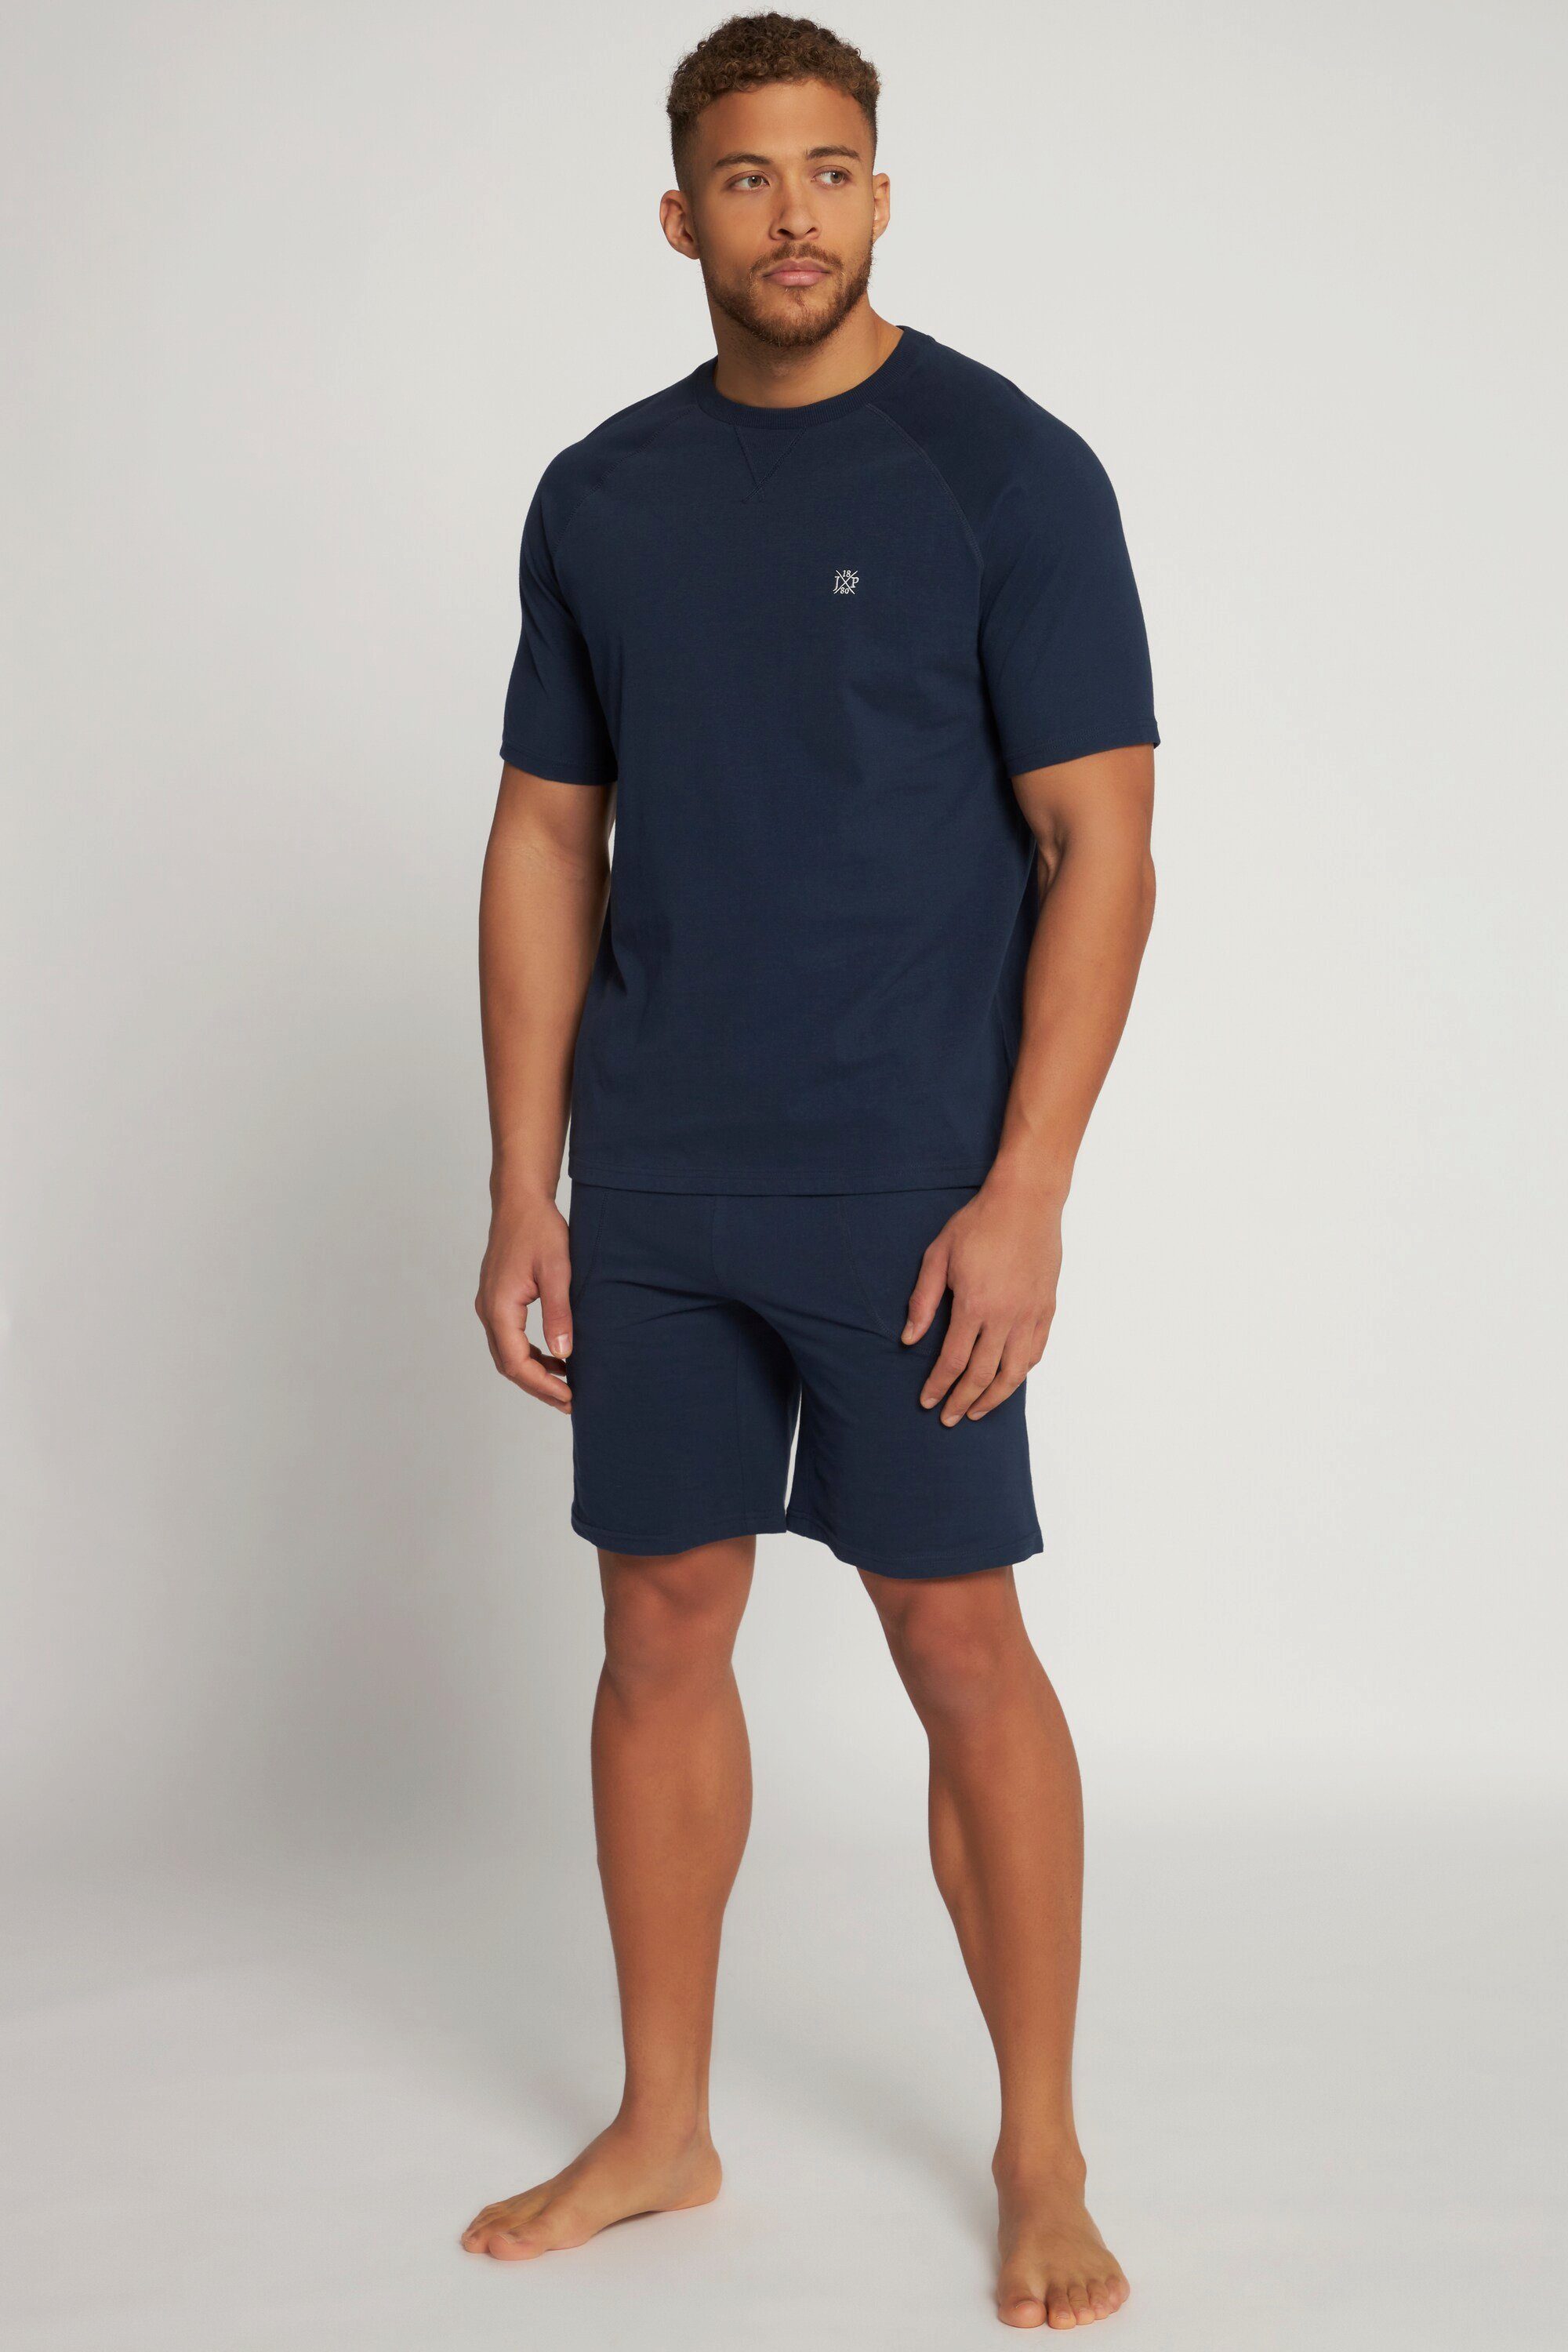 JP1880 Schlafanzug Schlafanzug T-Shirt Shorts bis 8 XL